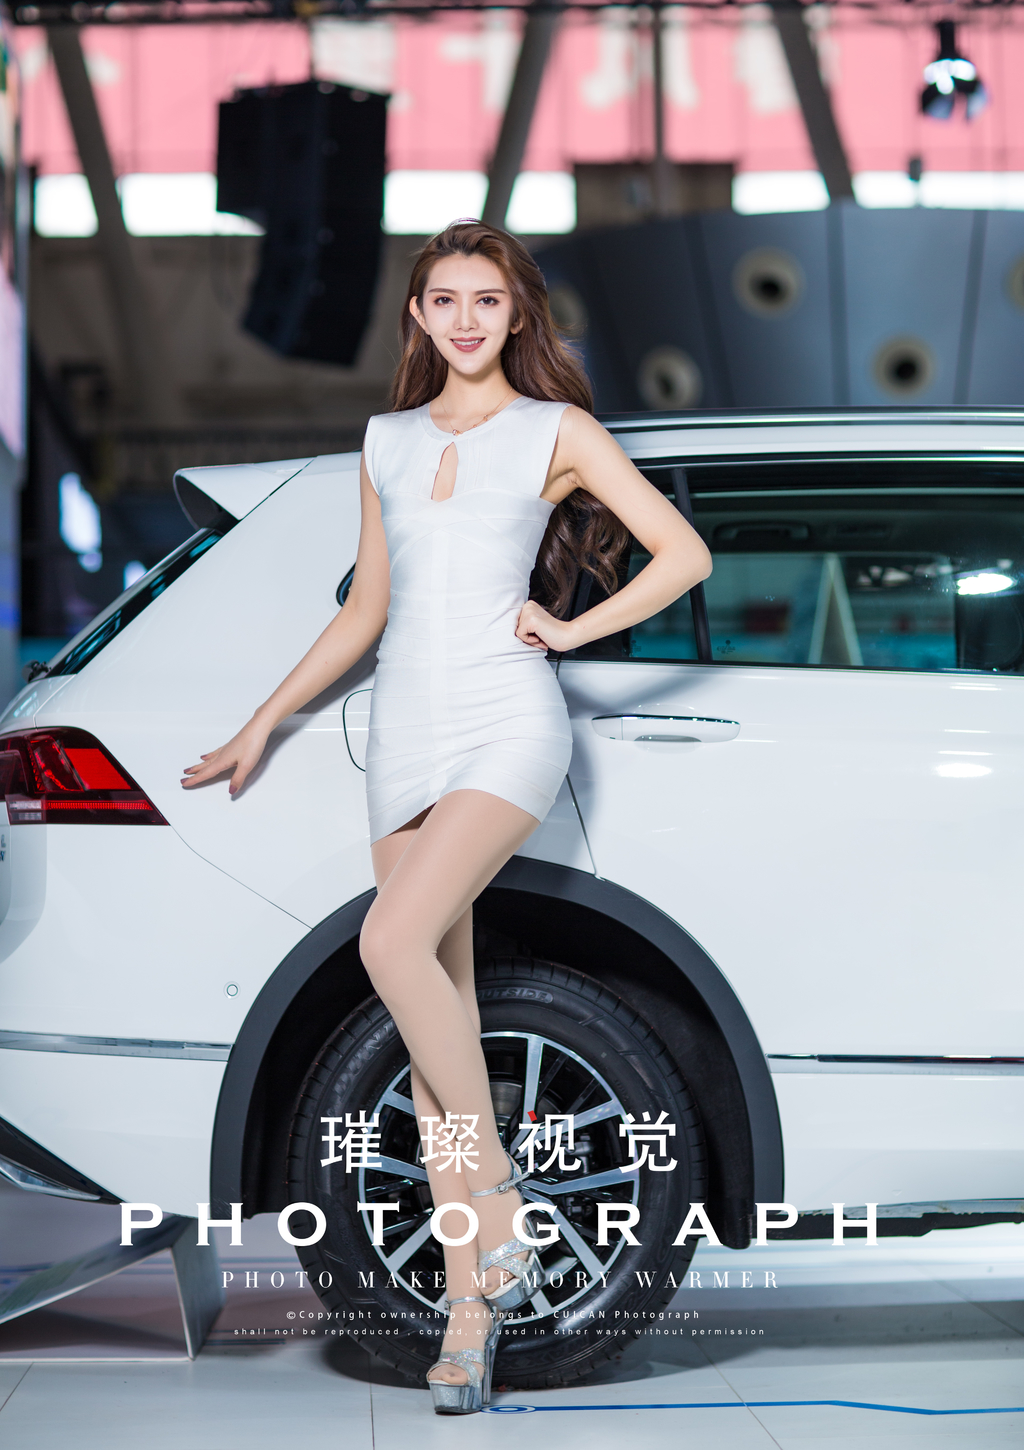 哈尔滨美女车模s型身材前凸后翘迷人笑容车展写真